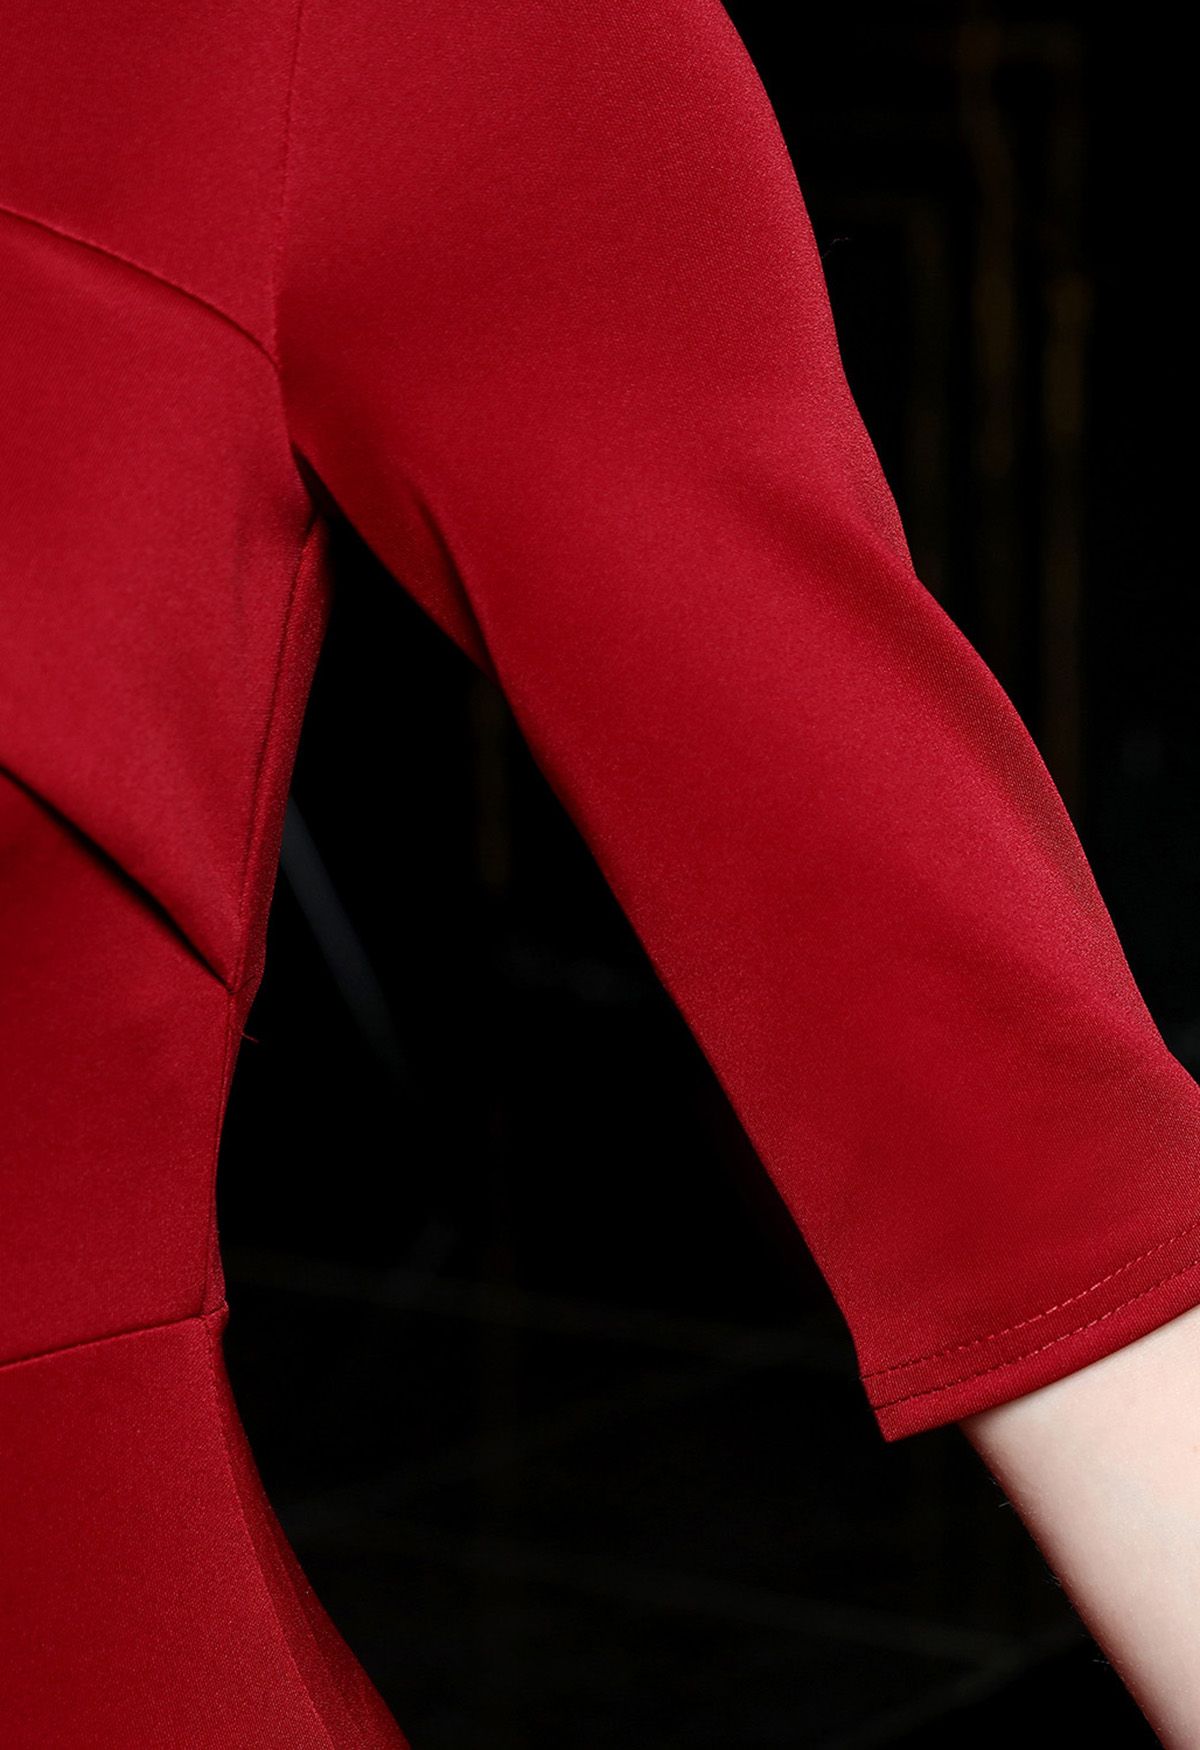 فستان ساتان مكشوف الأكتاف من جانب واحد باللون الأحمر